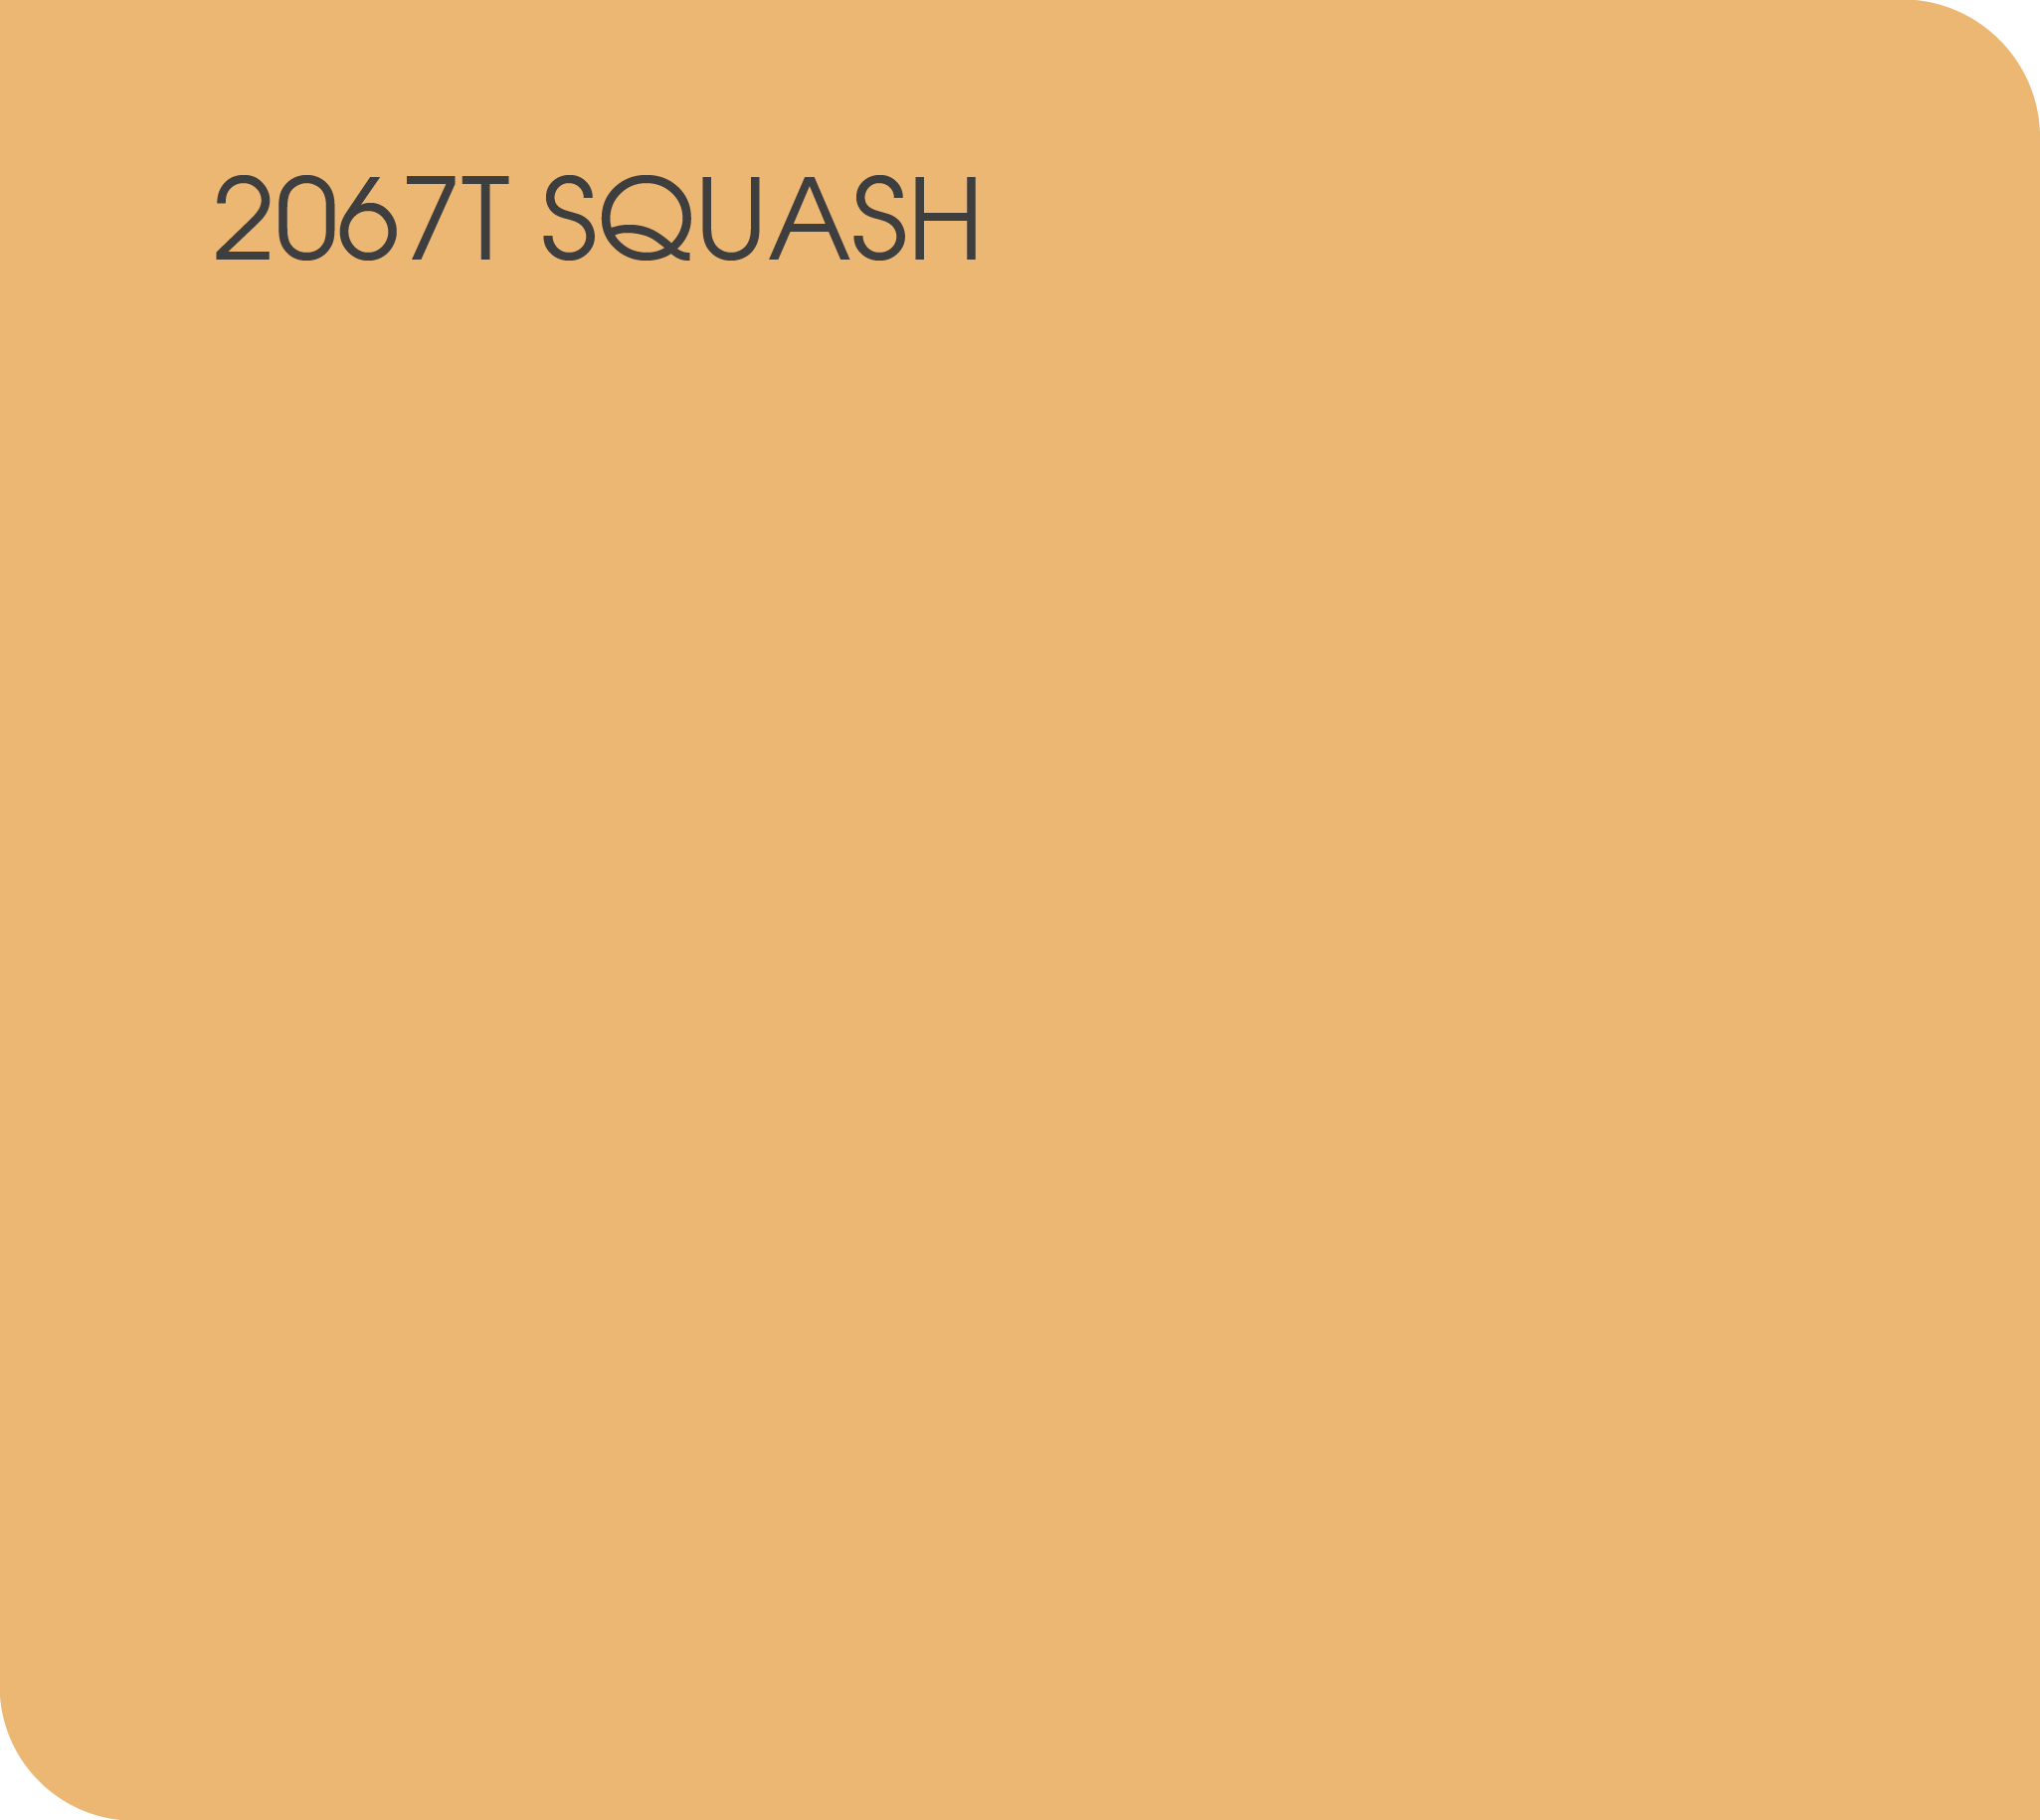 squash 2067T